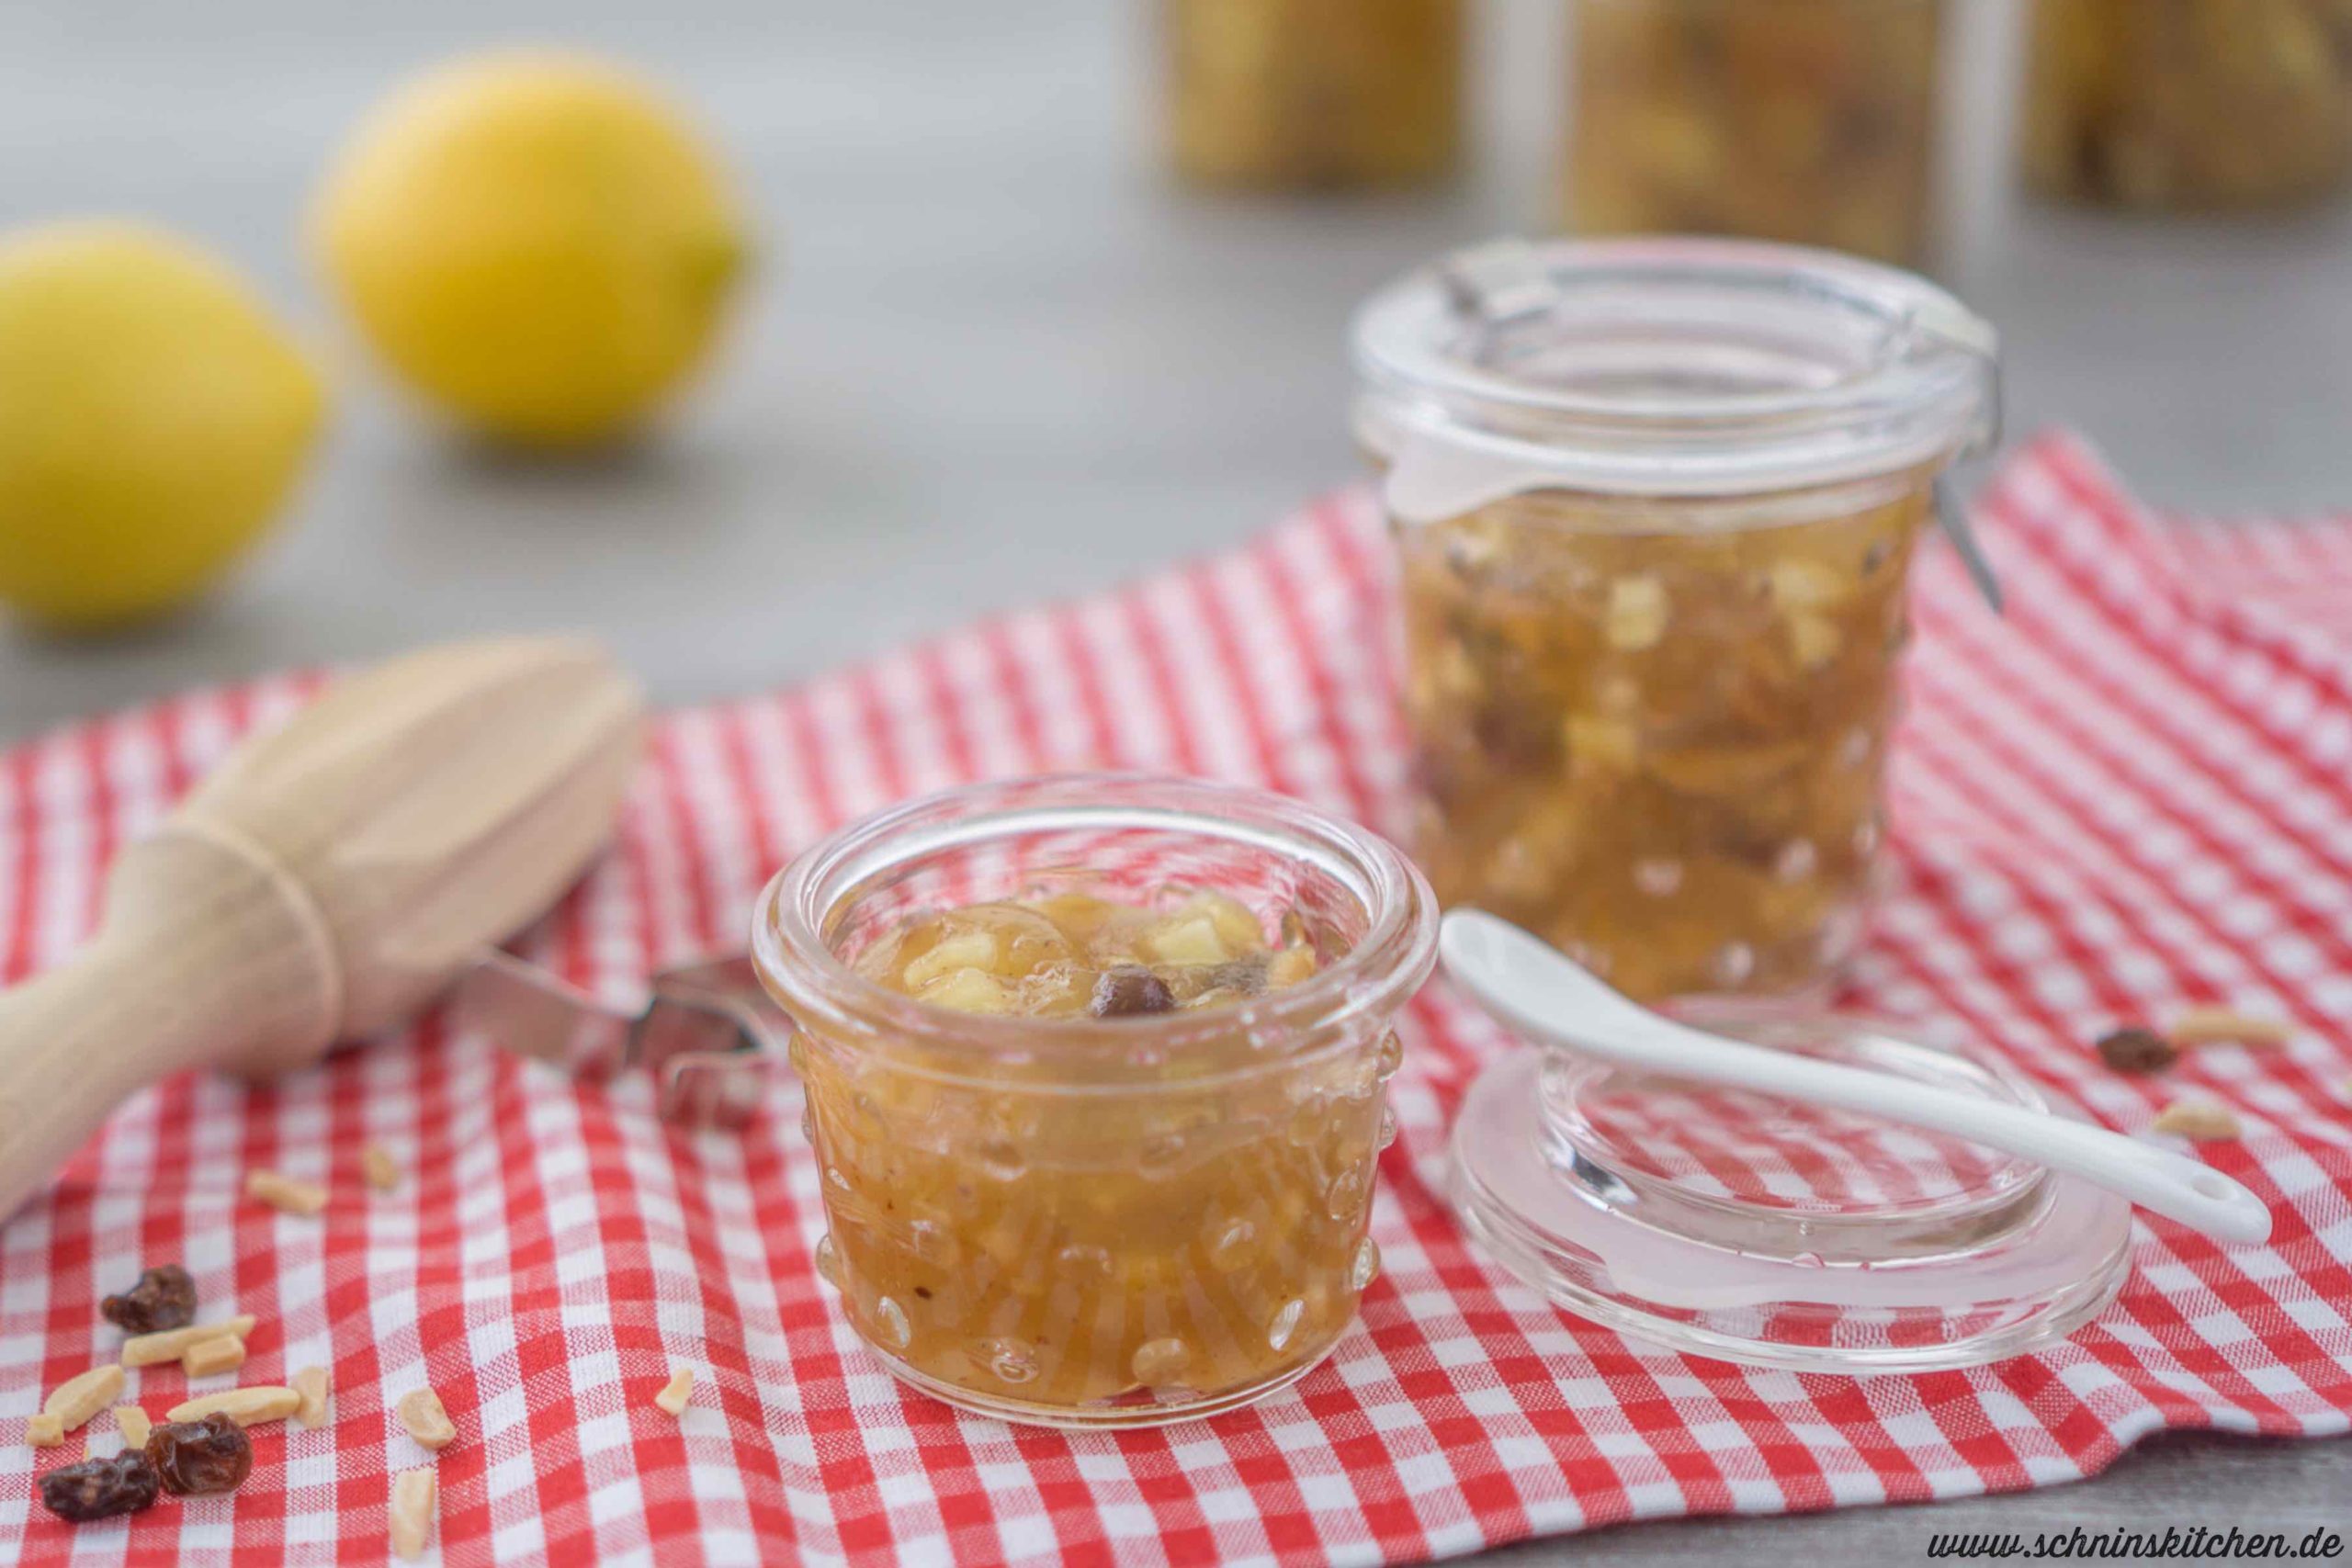 Apfelstrudelmarmelade selber kochen. Ein Rezept für leckeren Brotaufstrich aus Äpfeln, der schmeckt wie Apfelstrudel im Glas. | www.schninskitchen.de